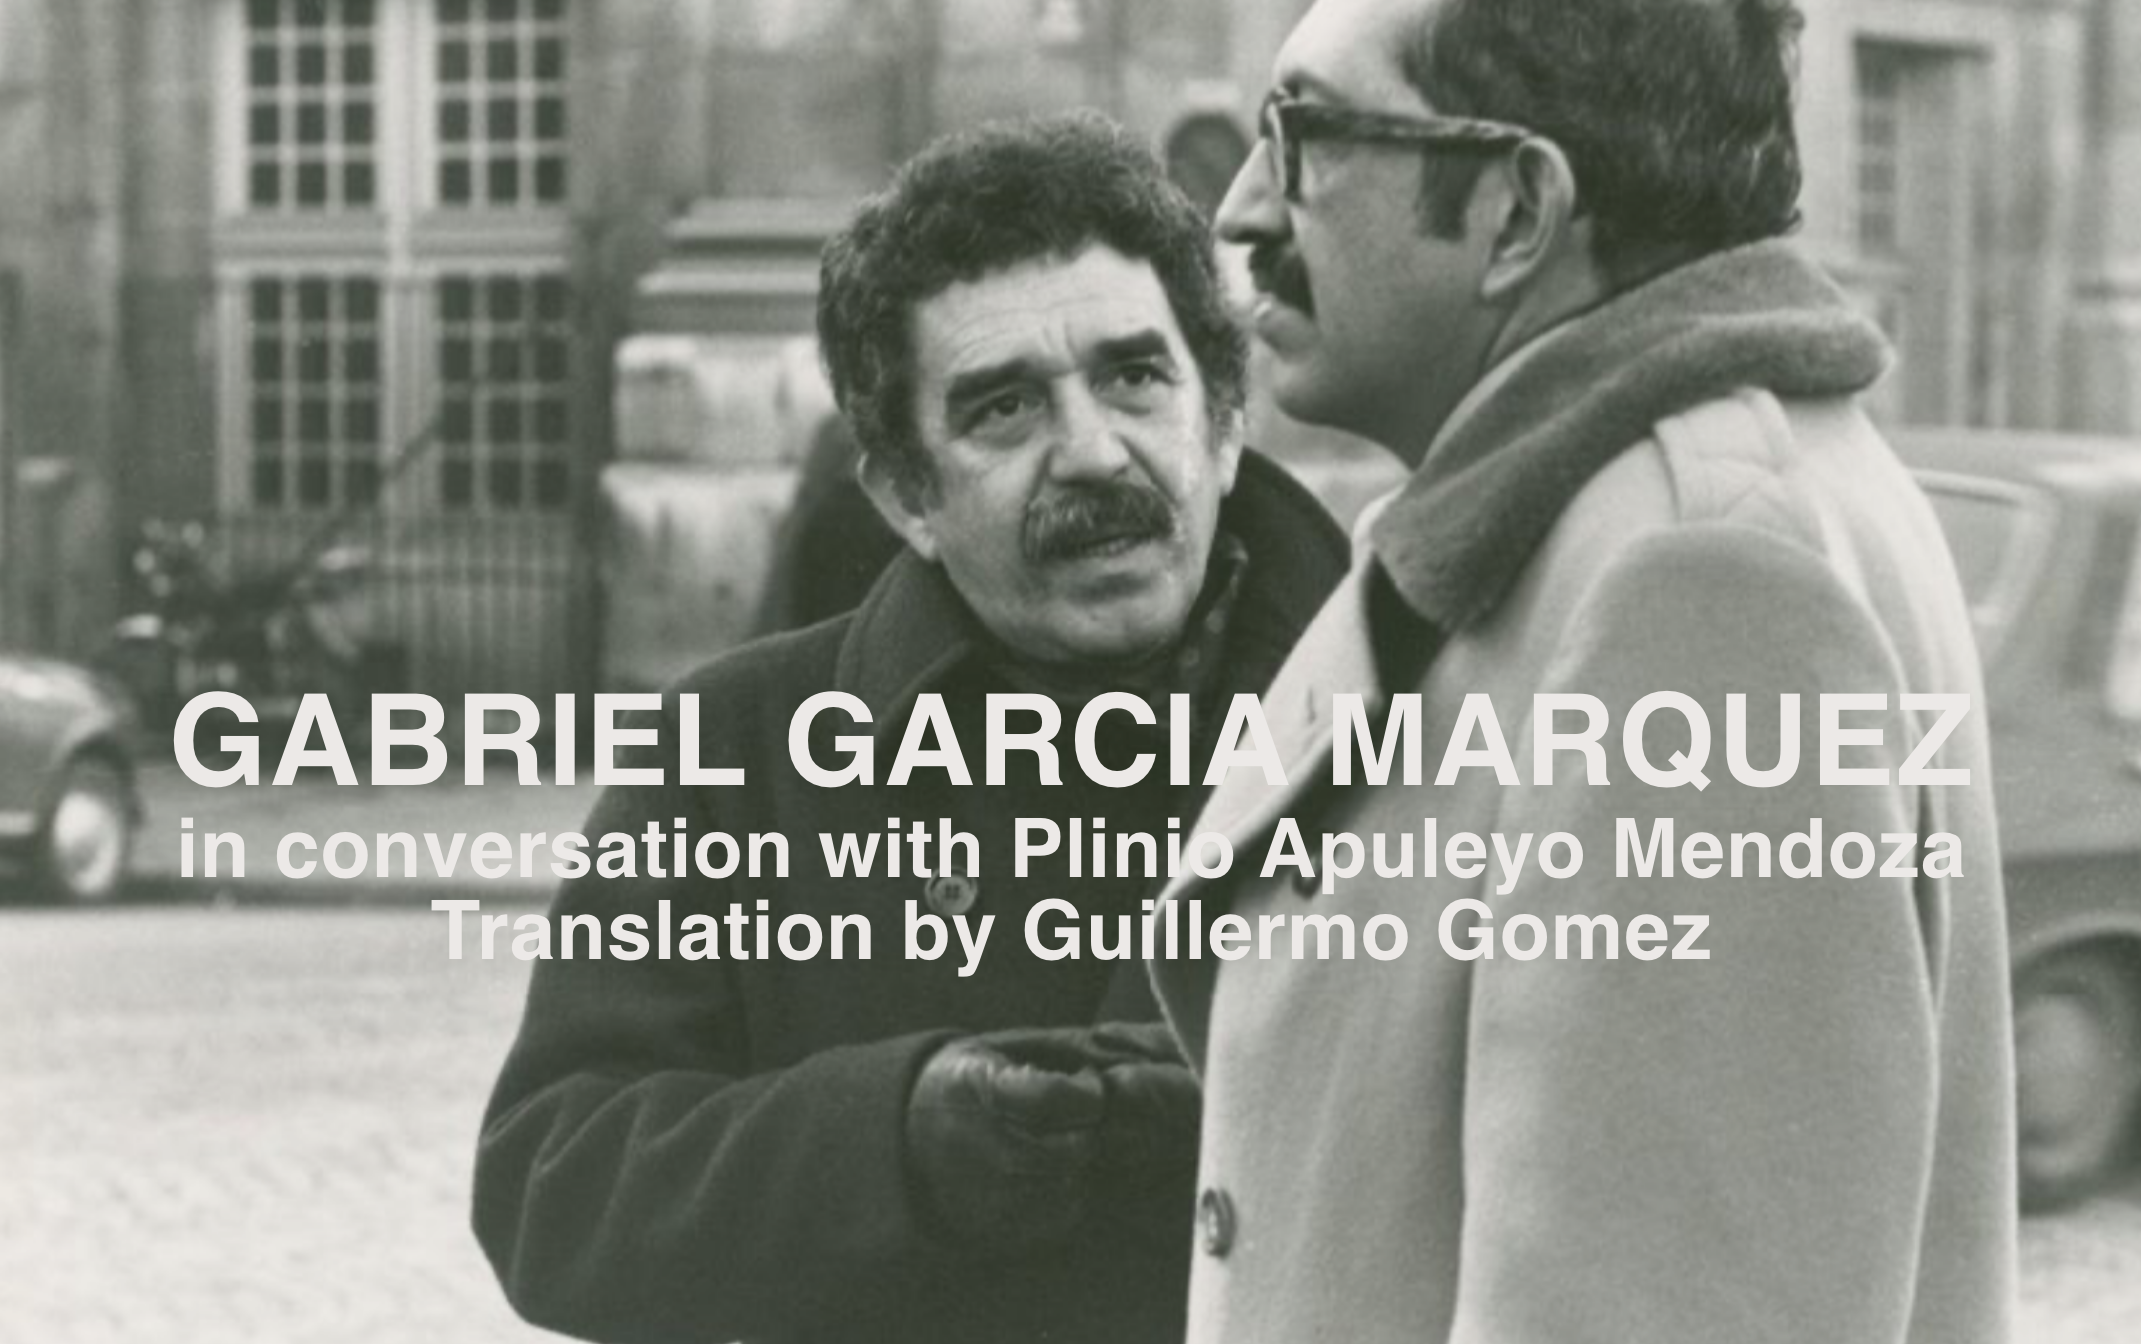 Gabriel García Marquez and Plinio Apuleyo Mendoza